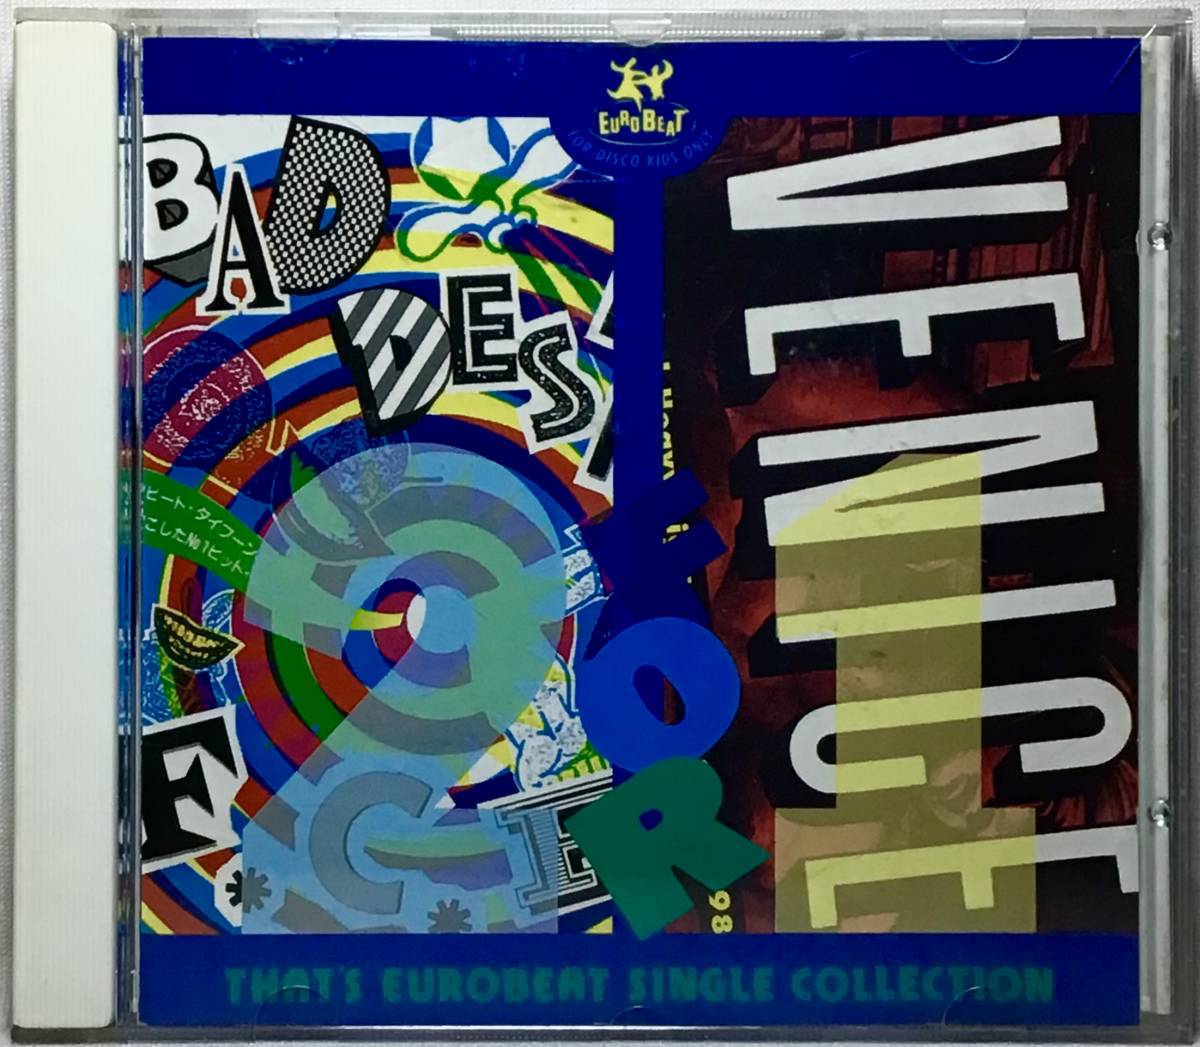 【日CD帯】 THAT'S EUROBEAT SINGLE COLLECTION 2 ザッツ・ユーロビート 1991 日本盤 CD F.C.F. / BAD DESIRE VENICE / EVER AND EVER _画像3